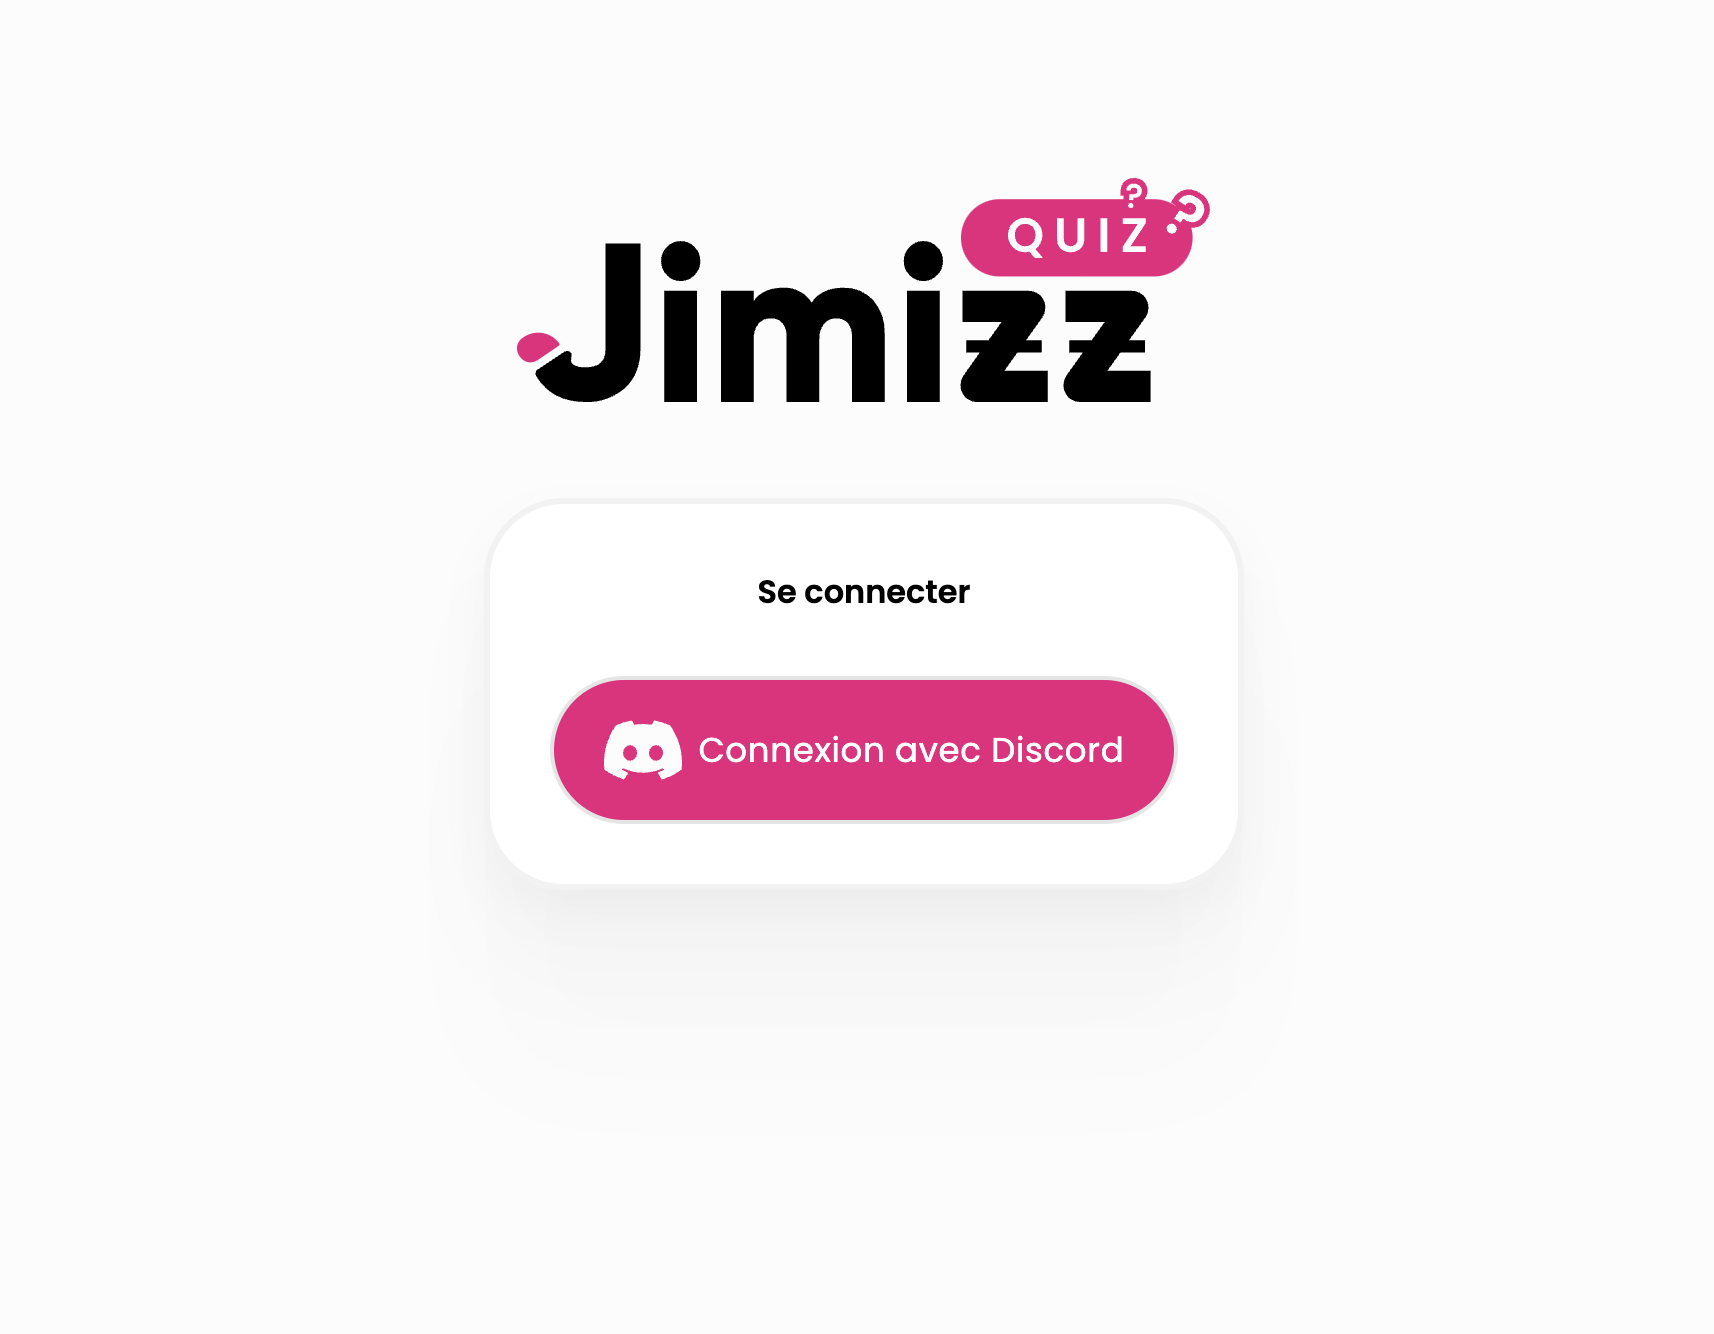 Le Jimizz Quiz est là